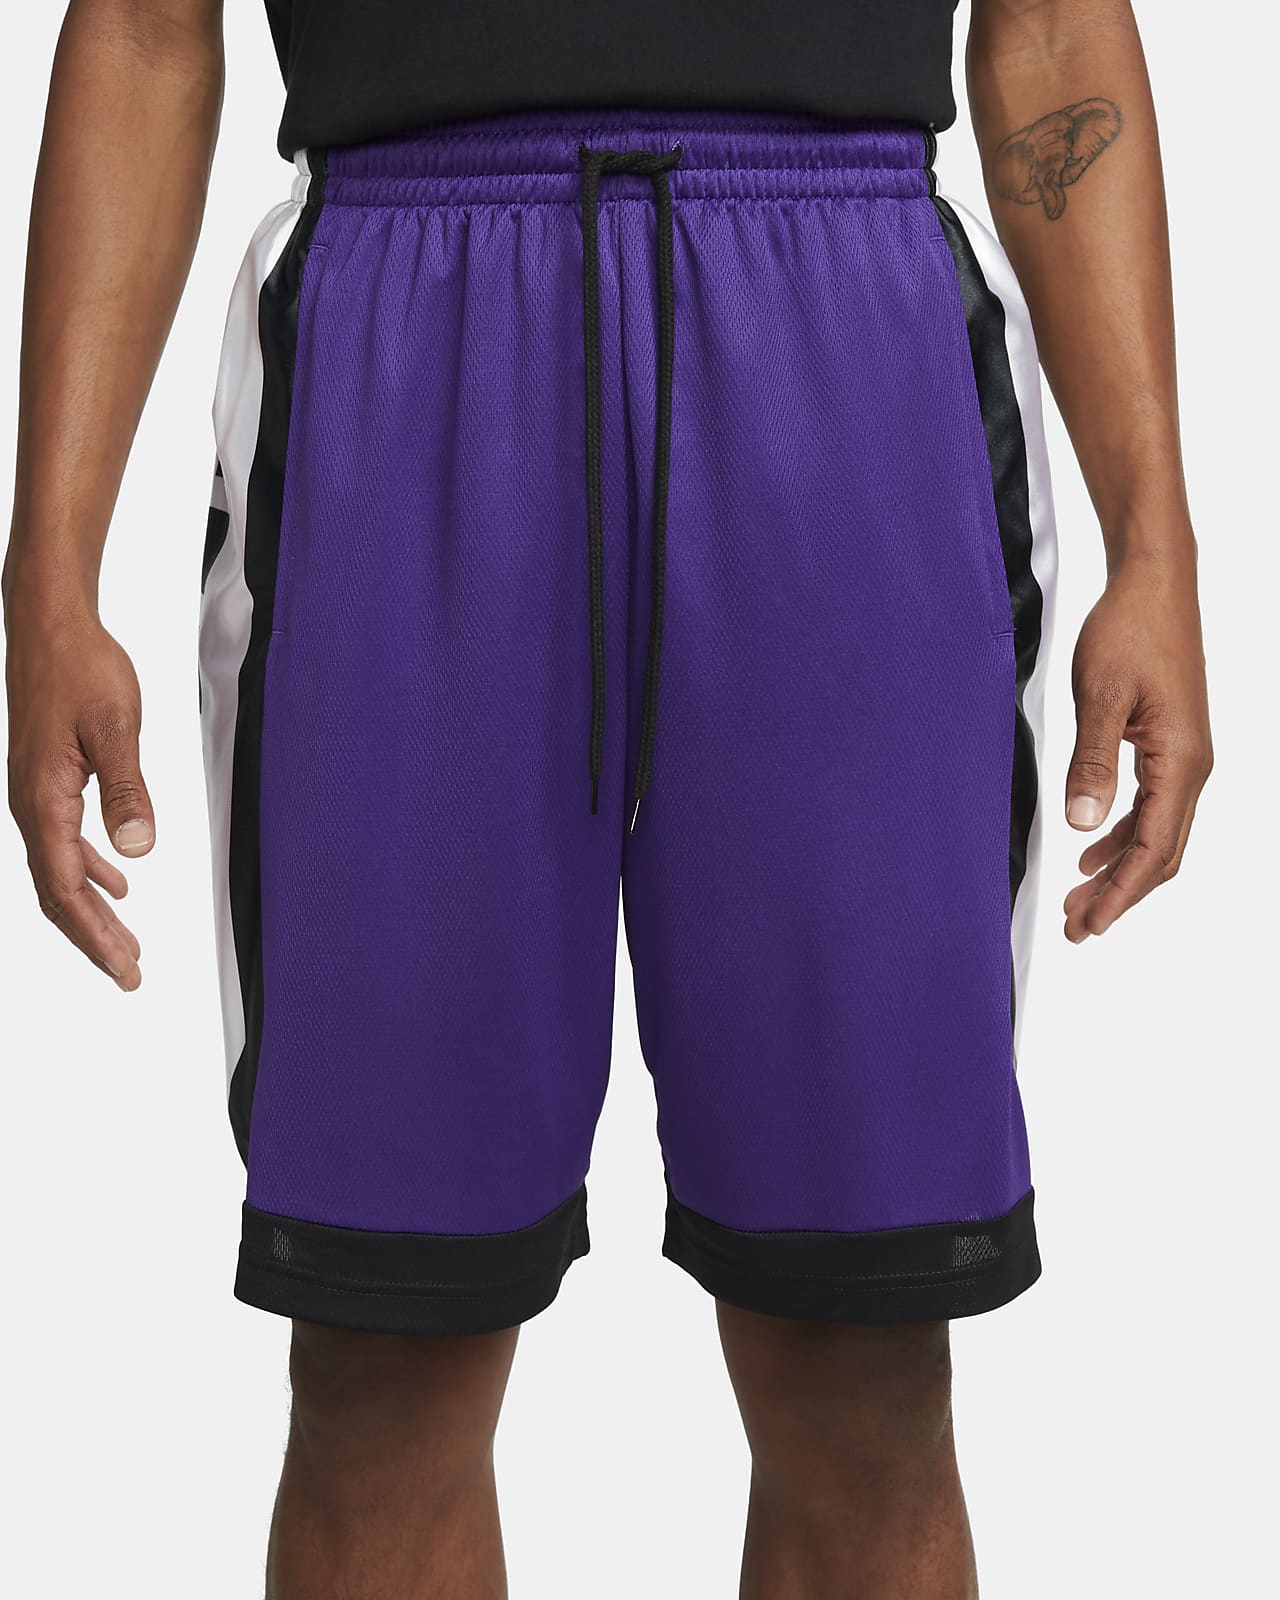 Shorts de básquetbol para hombre Dri-FIT Elite. Nike.com